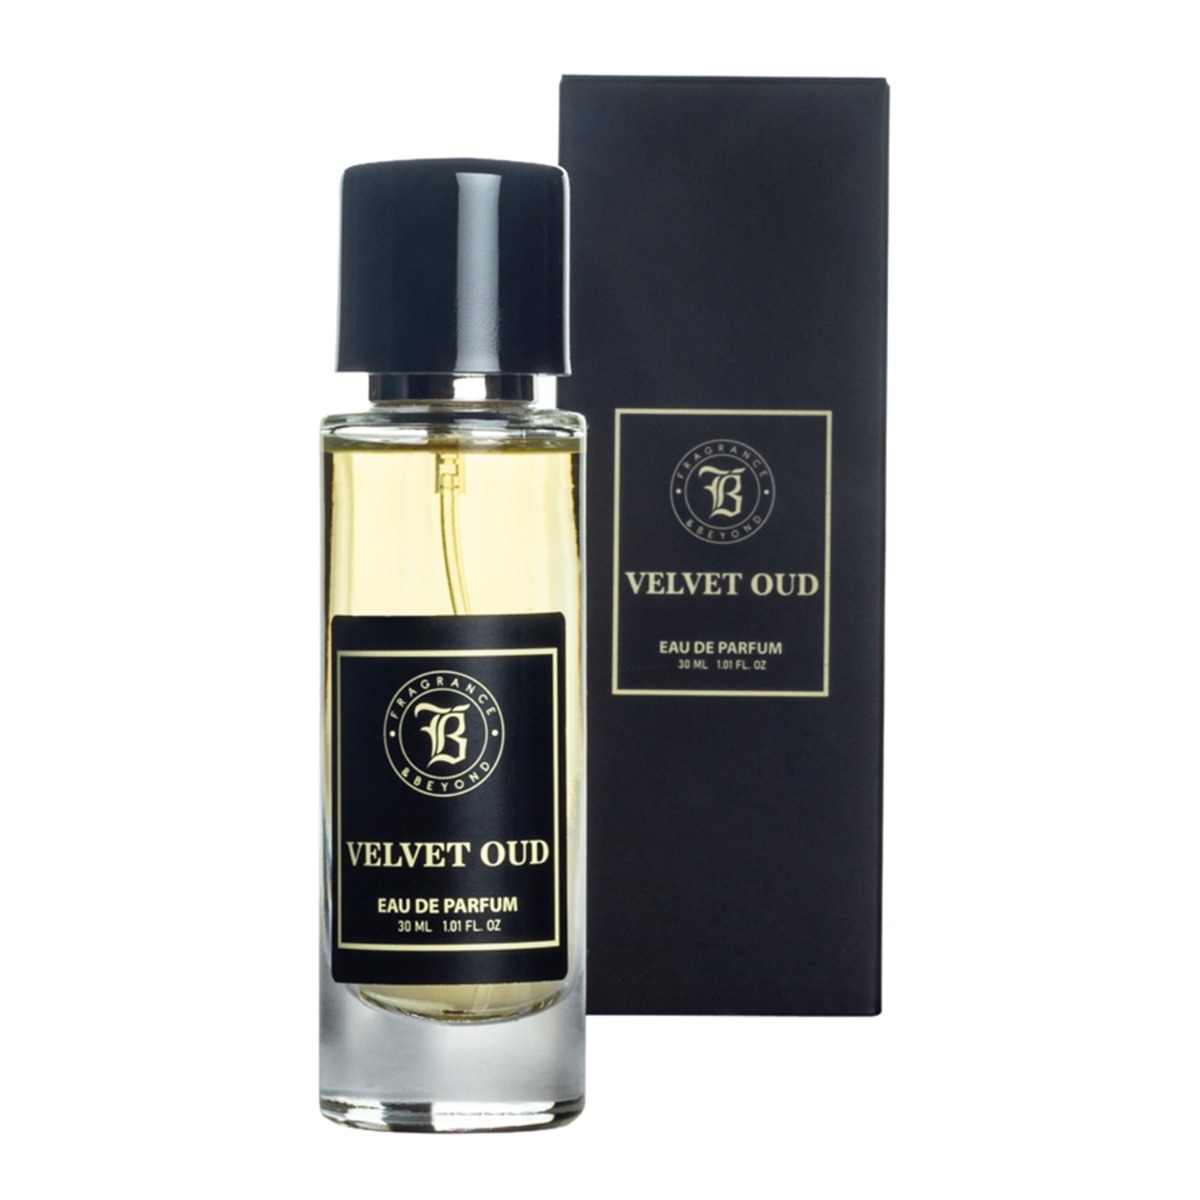 Fragrance & Beyond Velvet Oud, Eau De Parfum (Perfume) for Men, 30ml